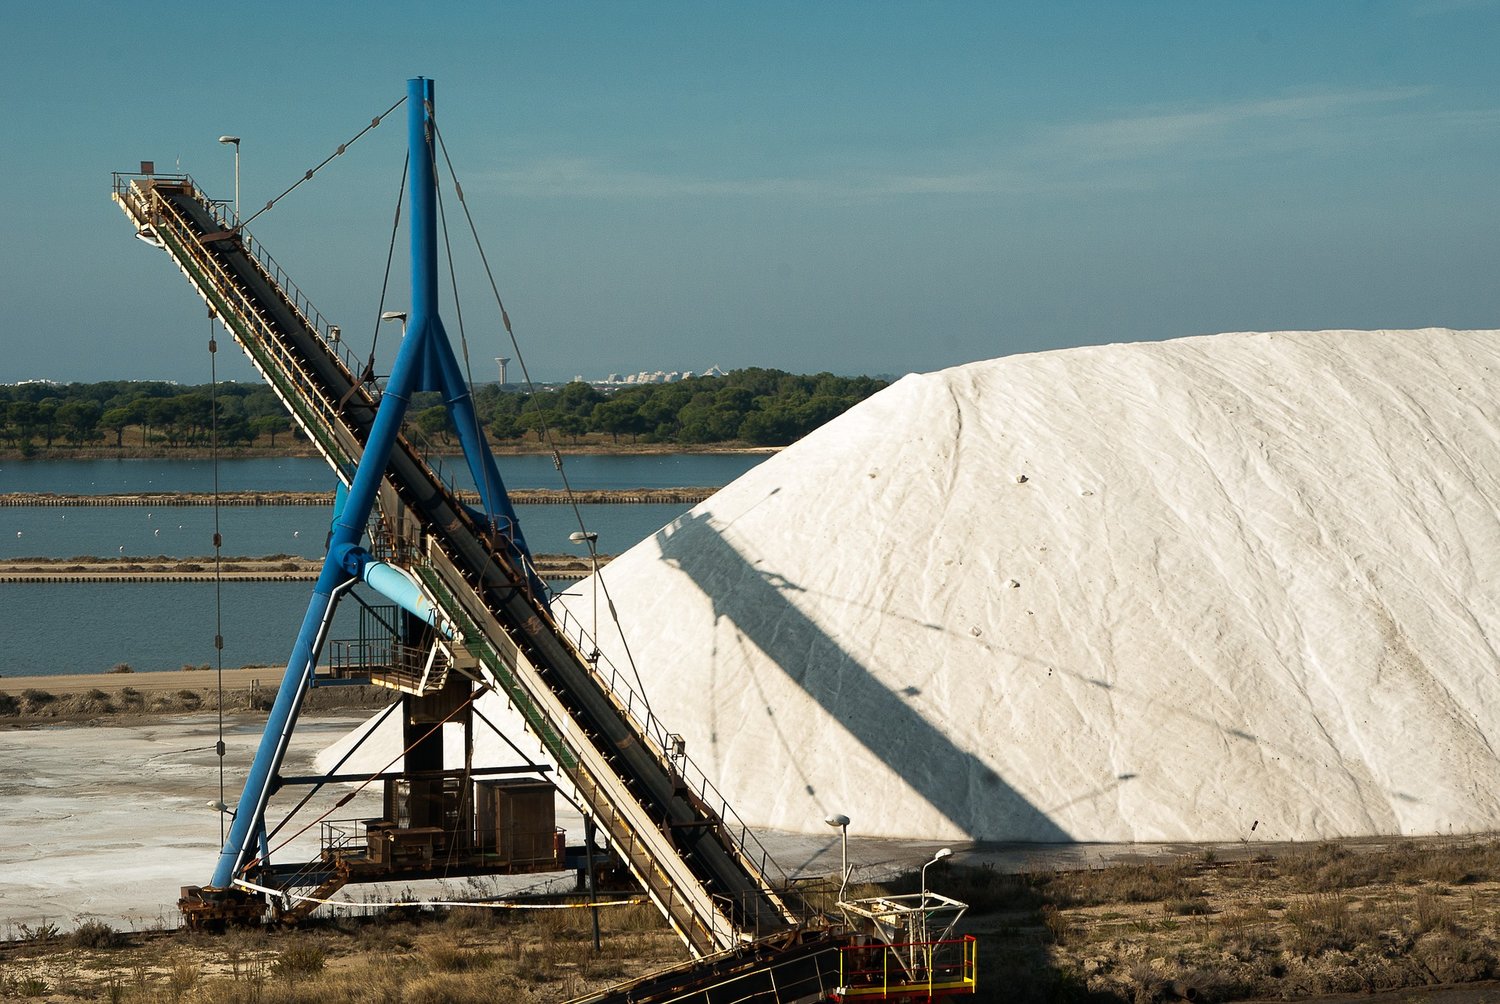 Salt harvesting since prehistoric times in Camargue, France